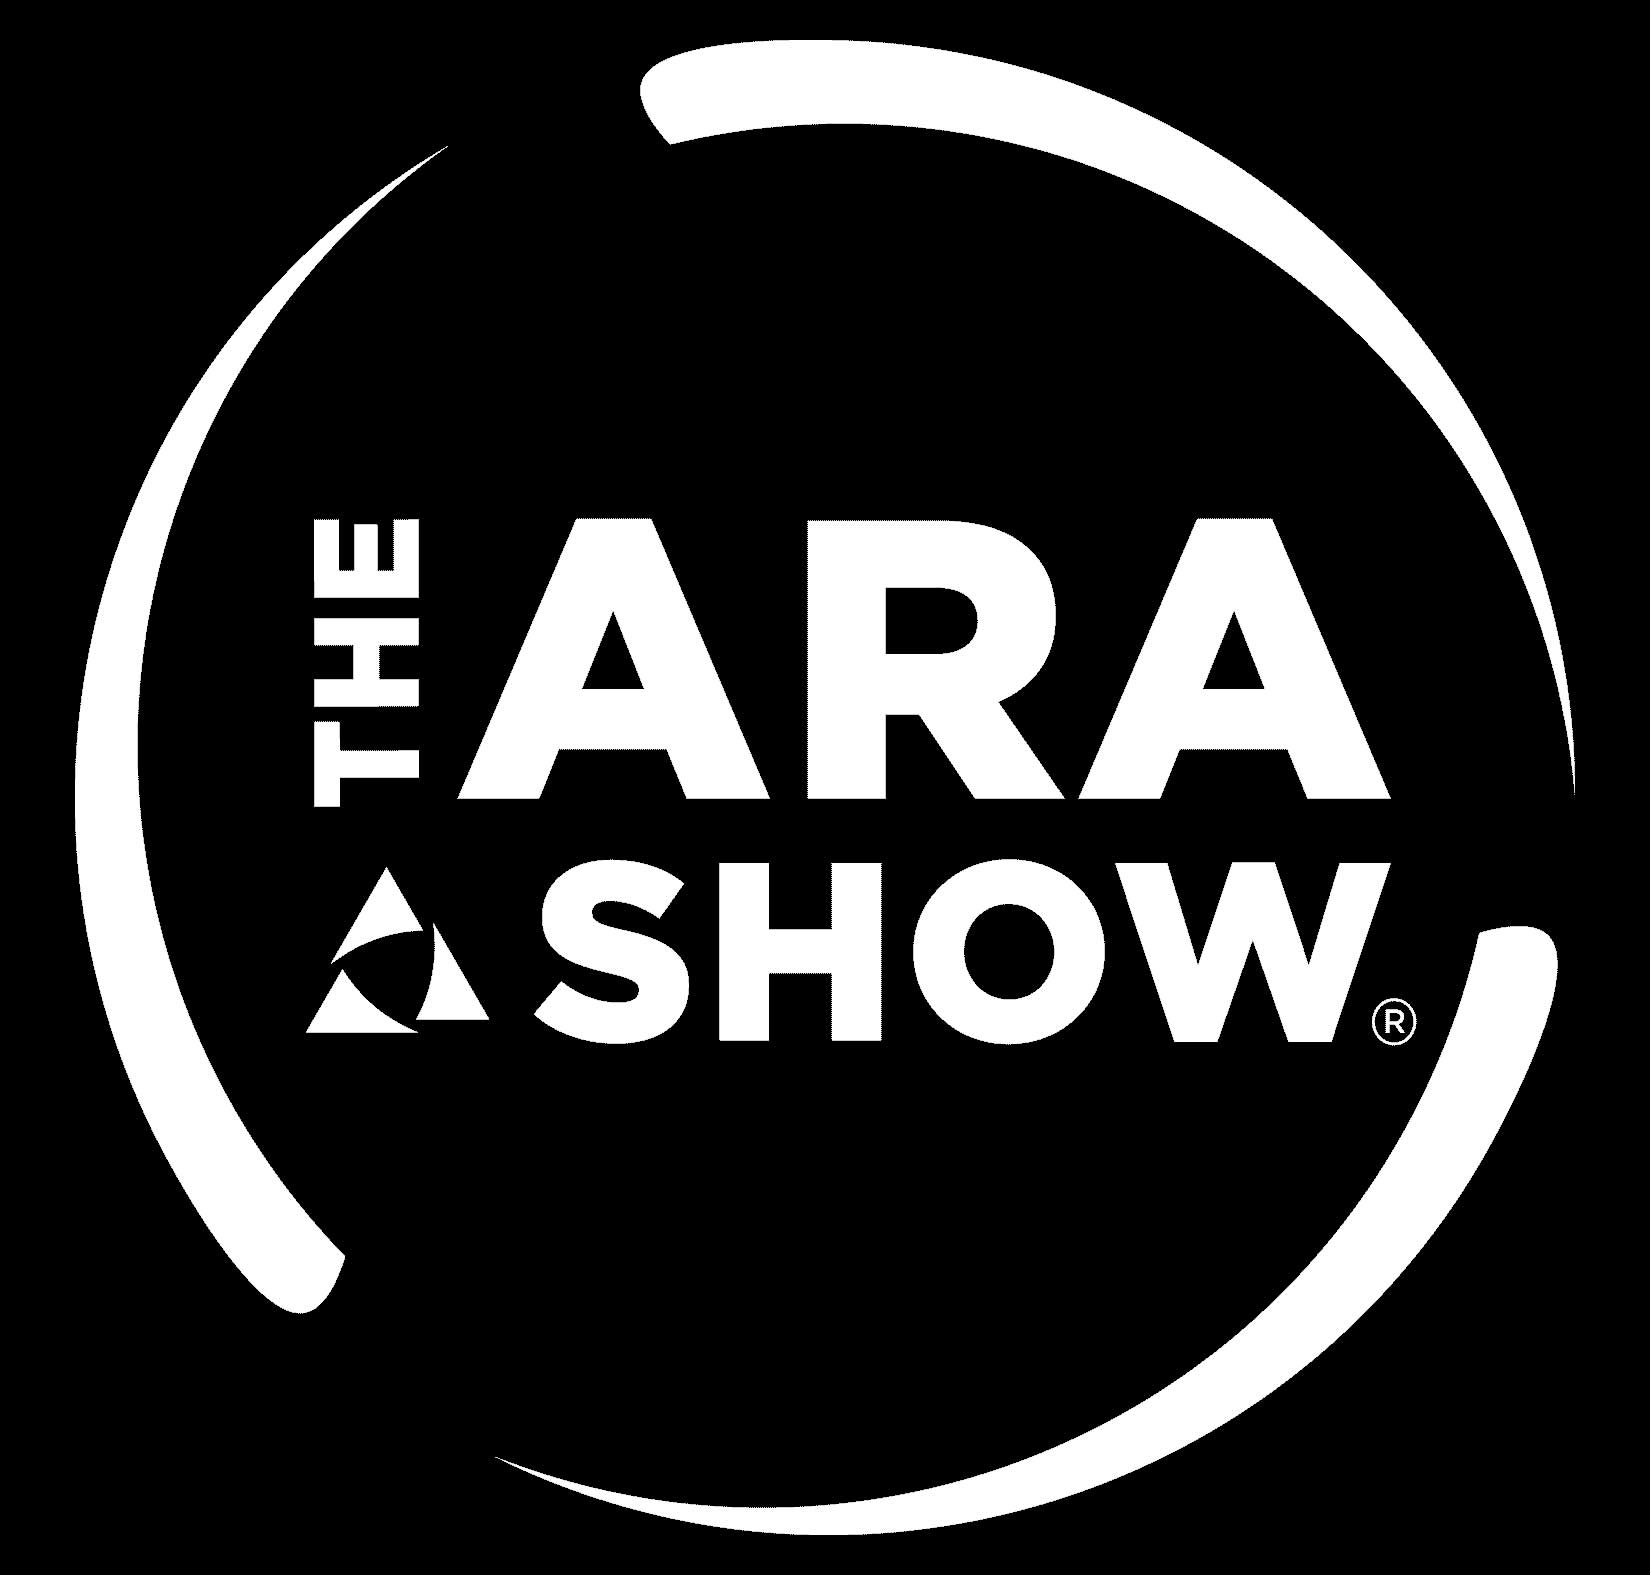 ARA Show 2024 Hilmerson